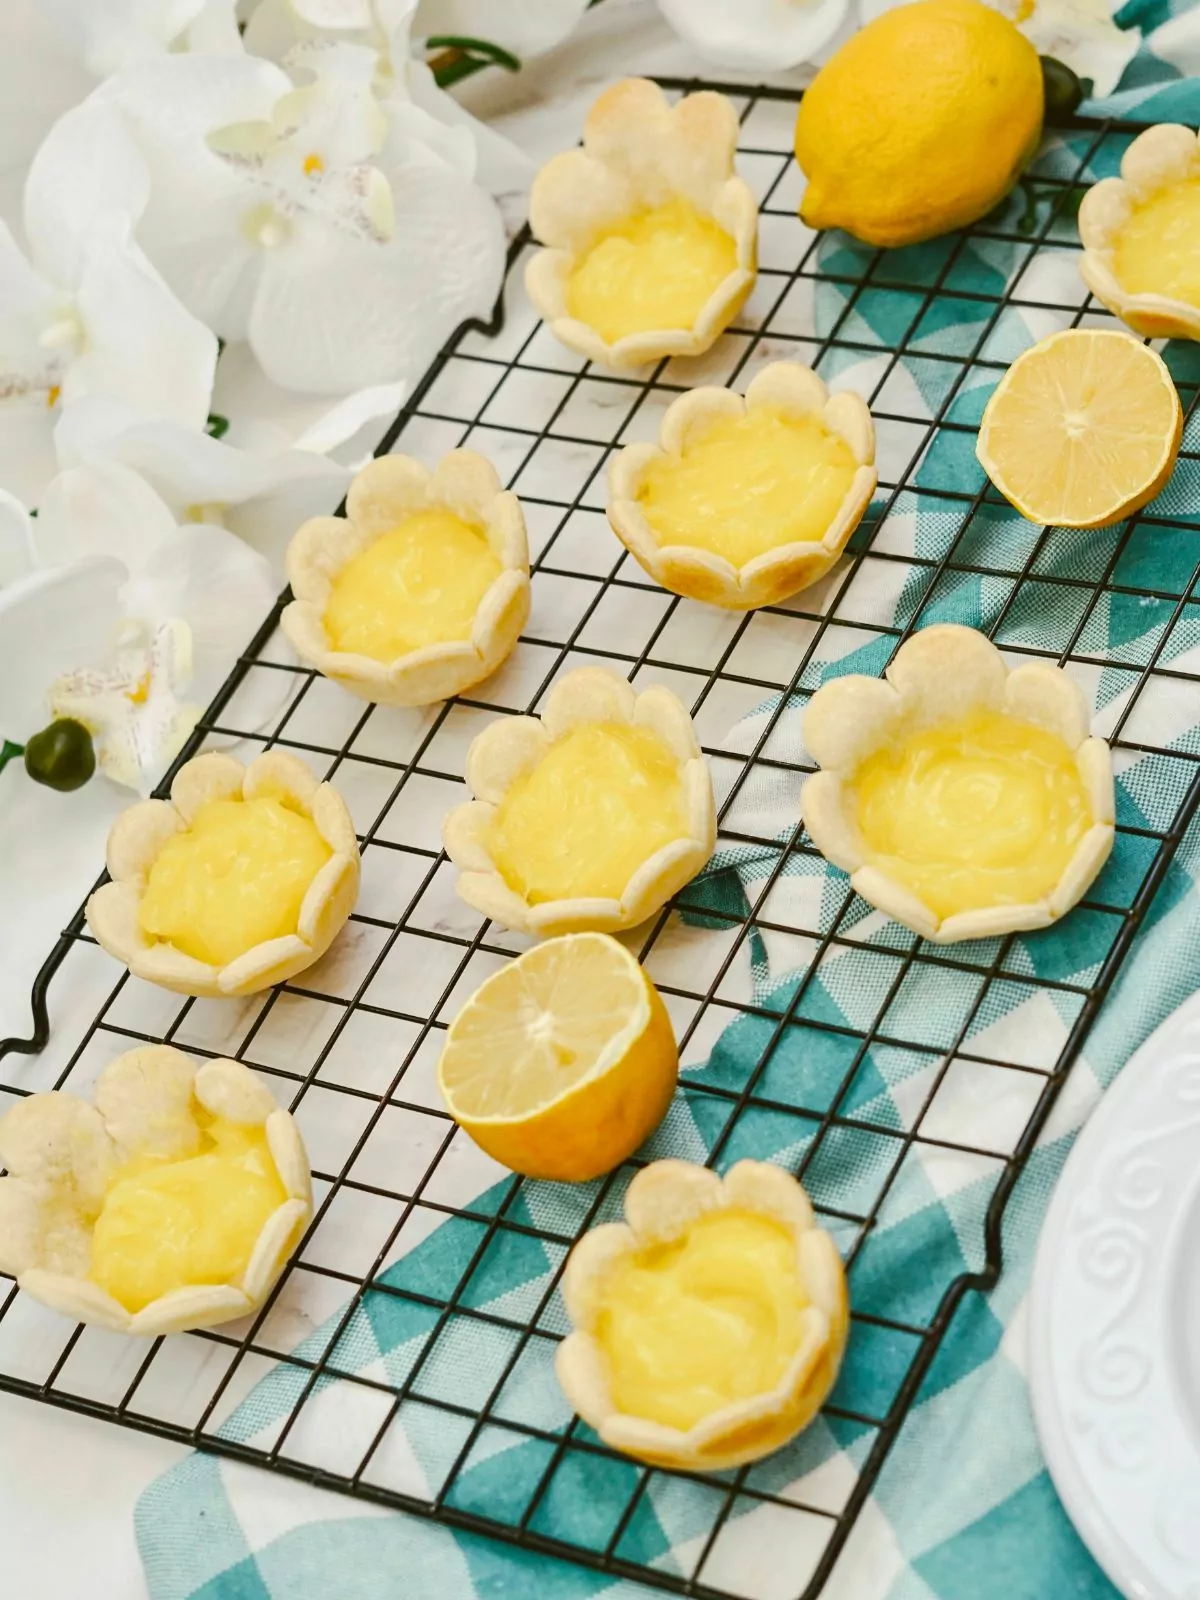 Lemon tarts in a flower shape